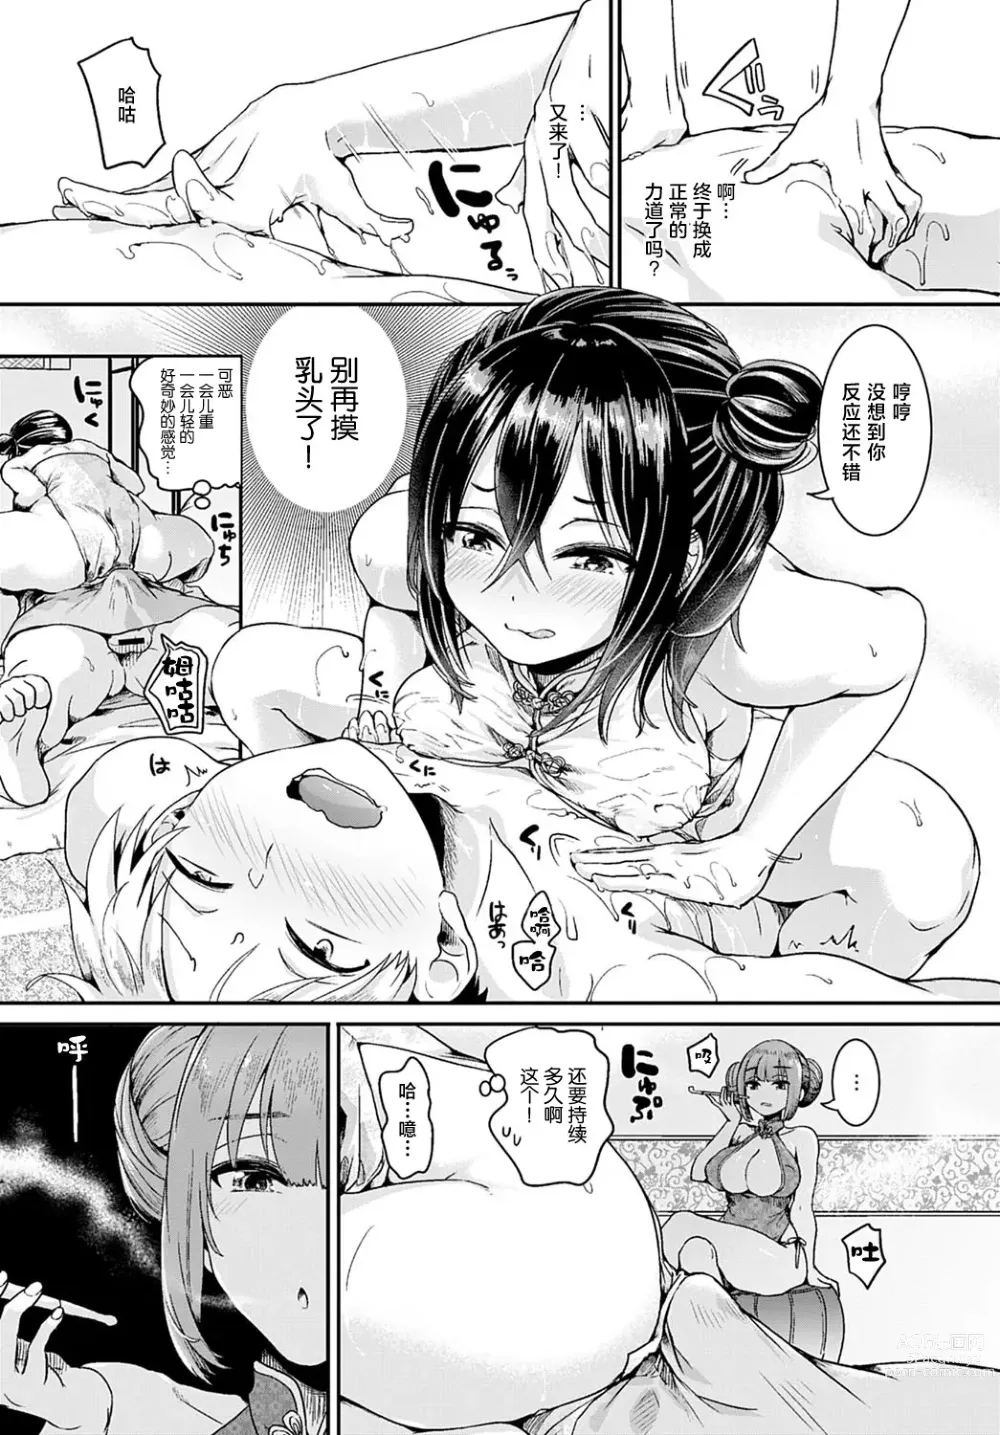 Page 7 of manga 小区里的男士美容店